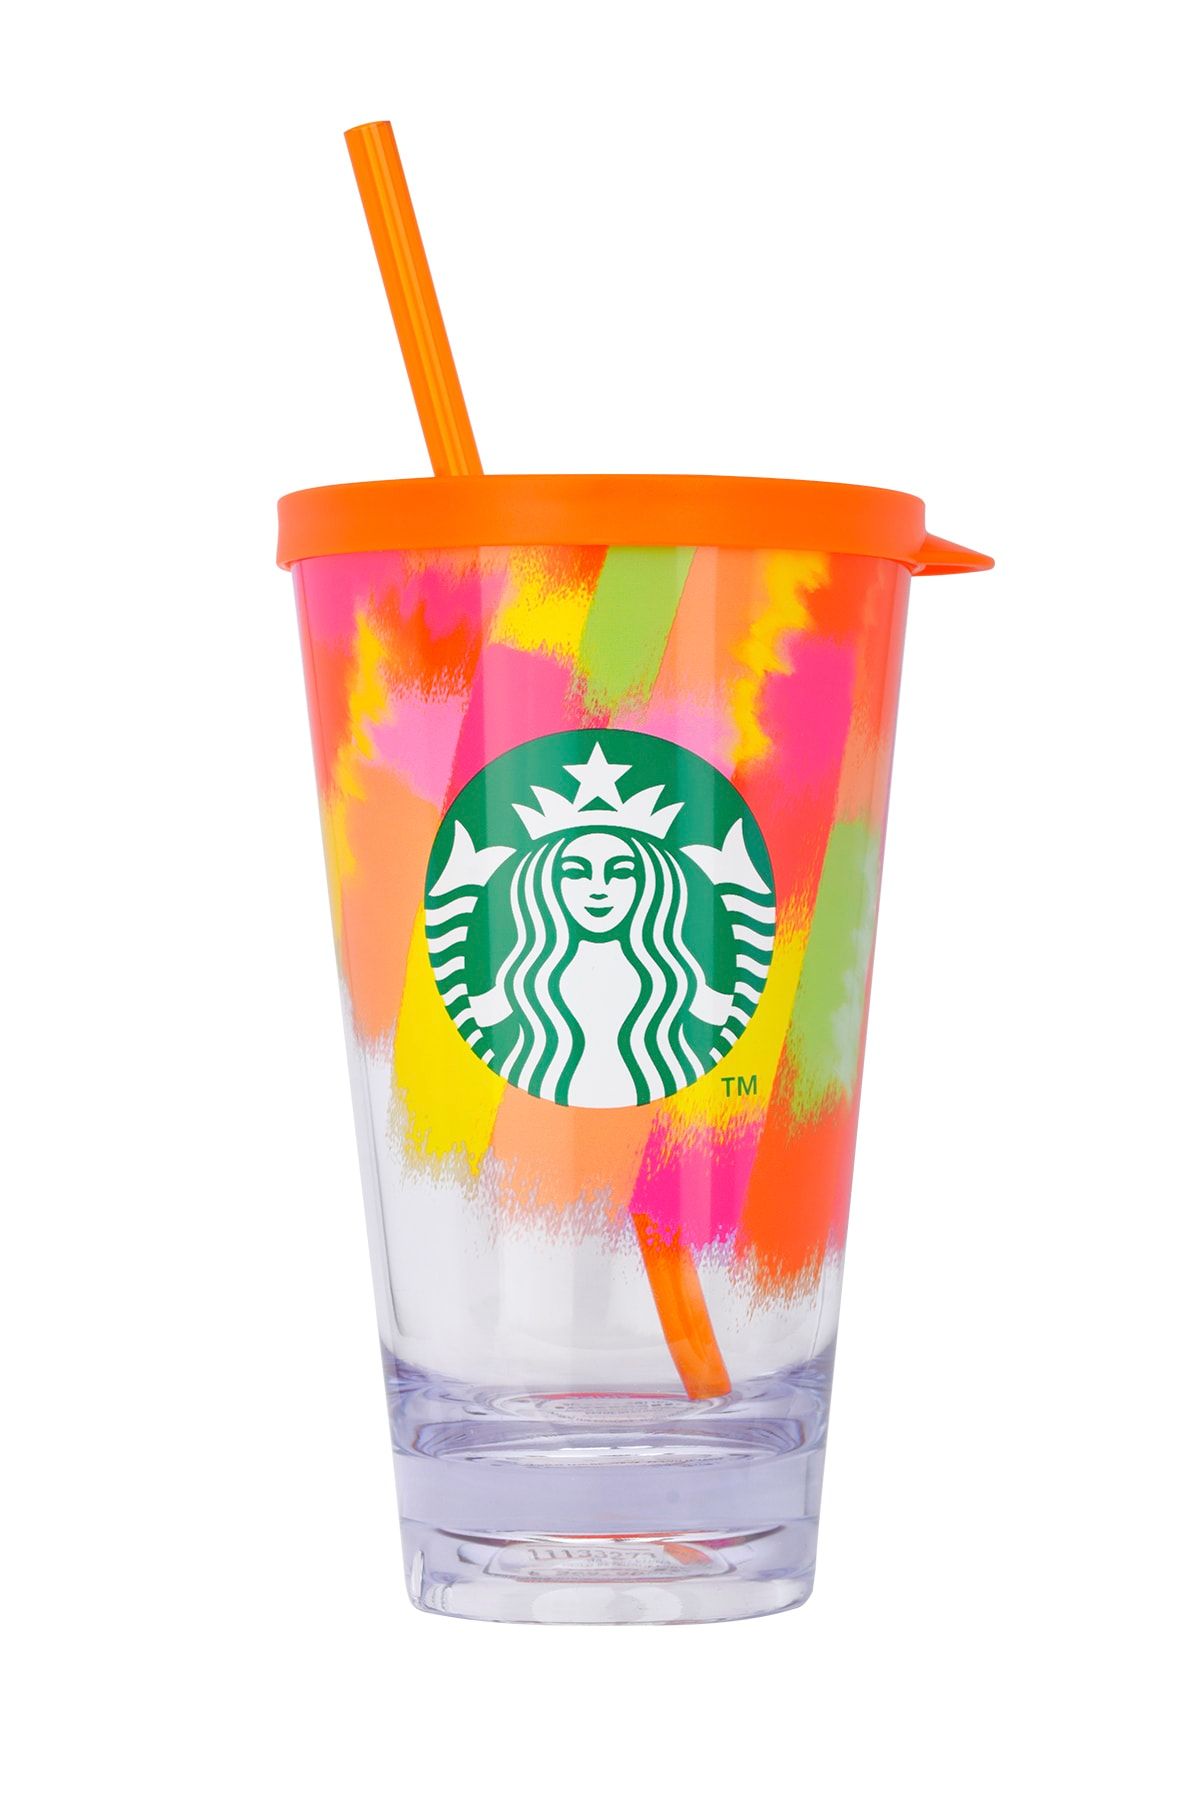 Starbucks Turuncu Renkli Soğuk Içecek Bardağı 591 Ml